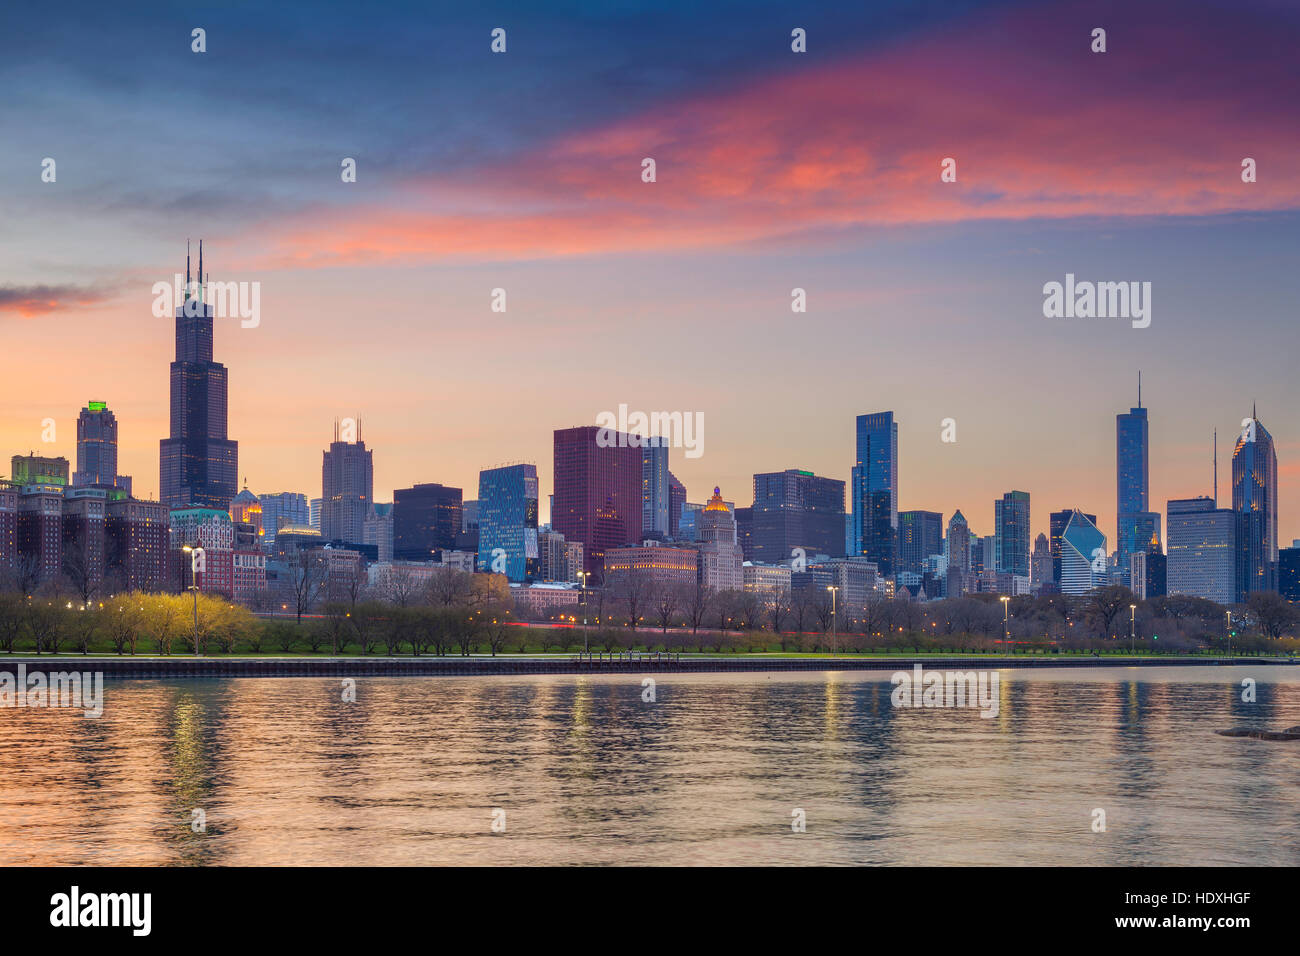 Horizon de Chicago. Cityscape image d'horizon de Chicago pendant le coucher du soleil. Banque D'Images